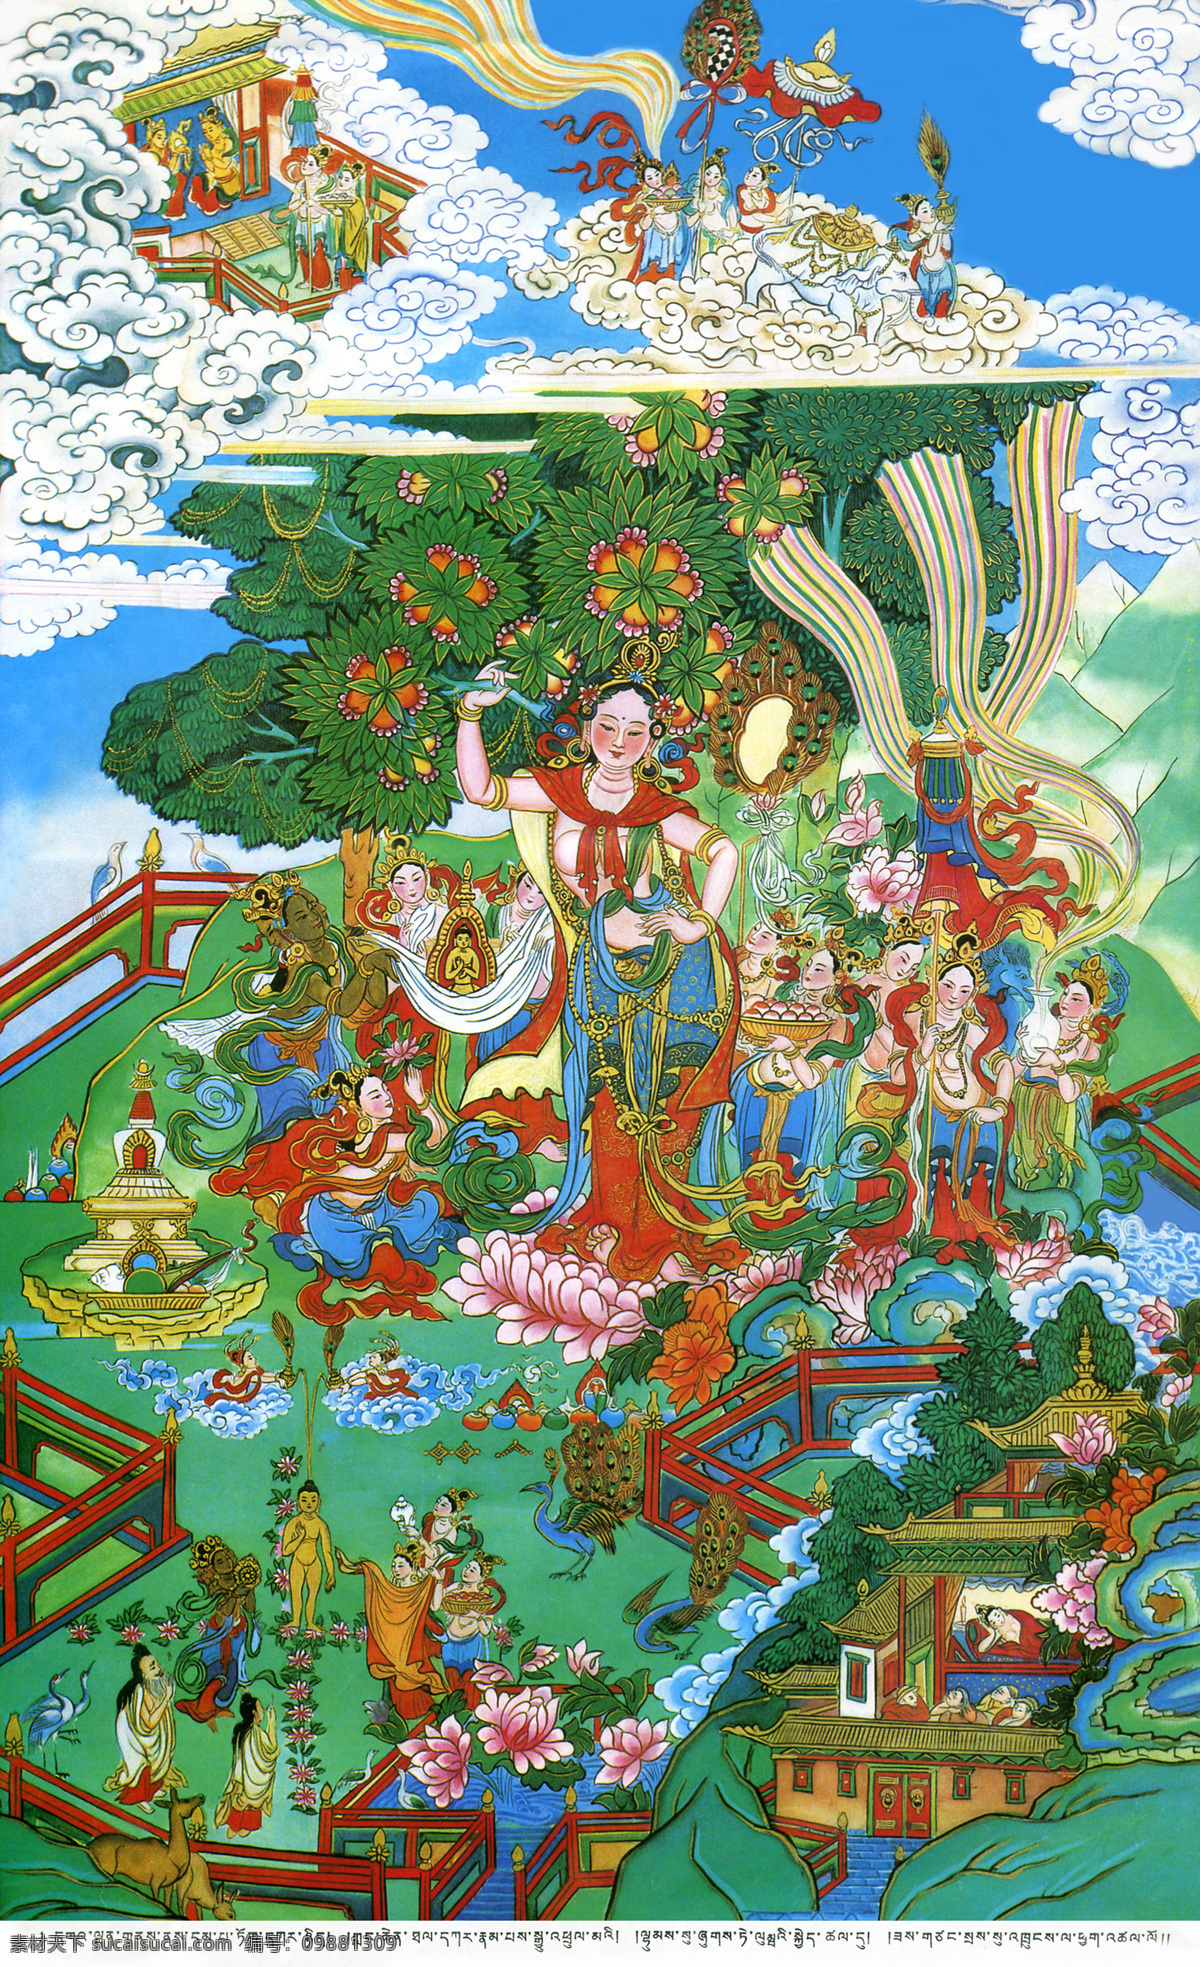 唐卡 佛教 藏传佛教 佛 宗教 宗教信仰 菩萨 西藏 民族 工艺 花纹 女菩萨 绘画 艺术 绘画书法 文化艺术